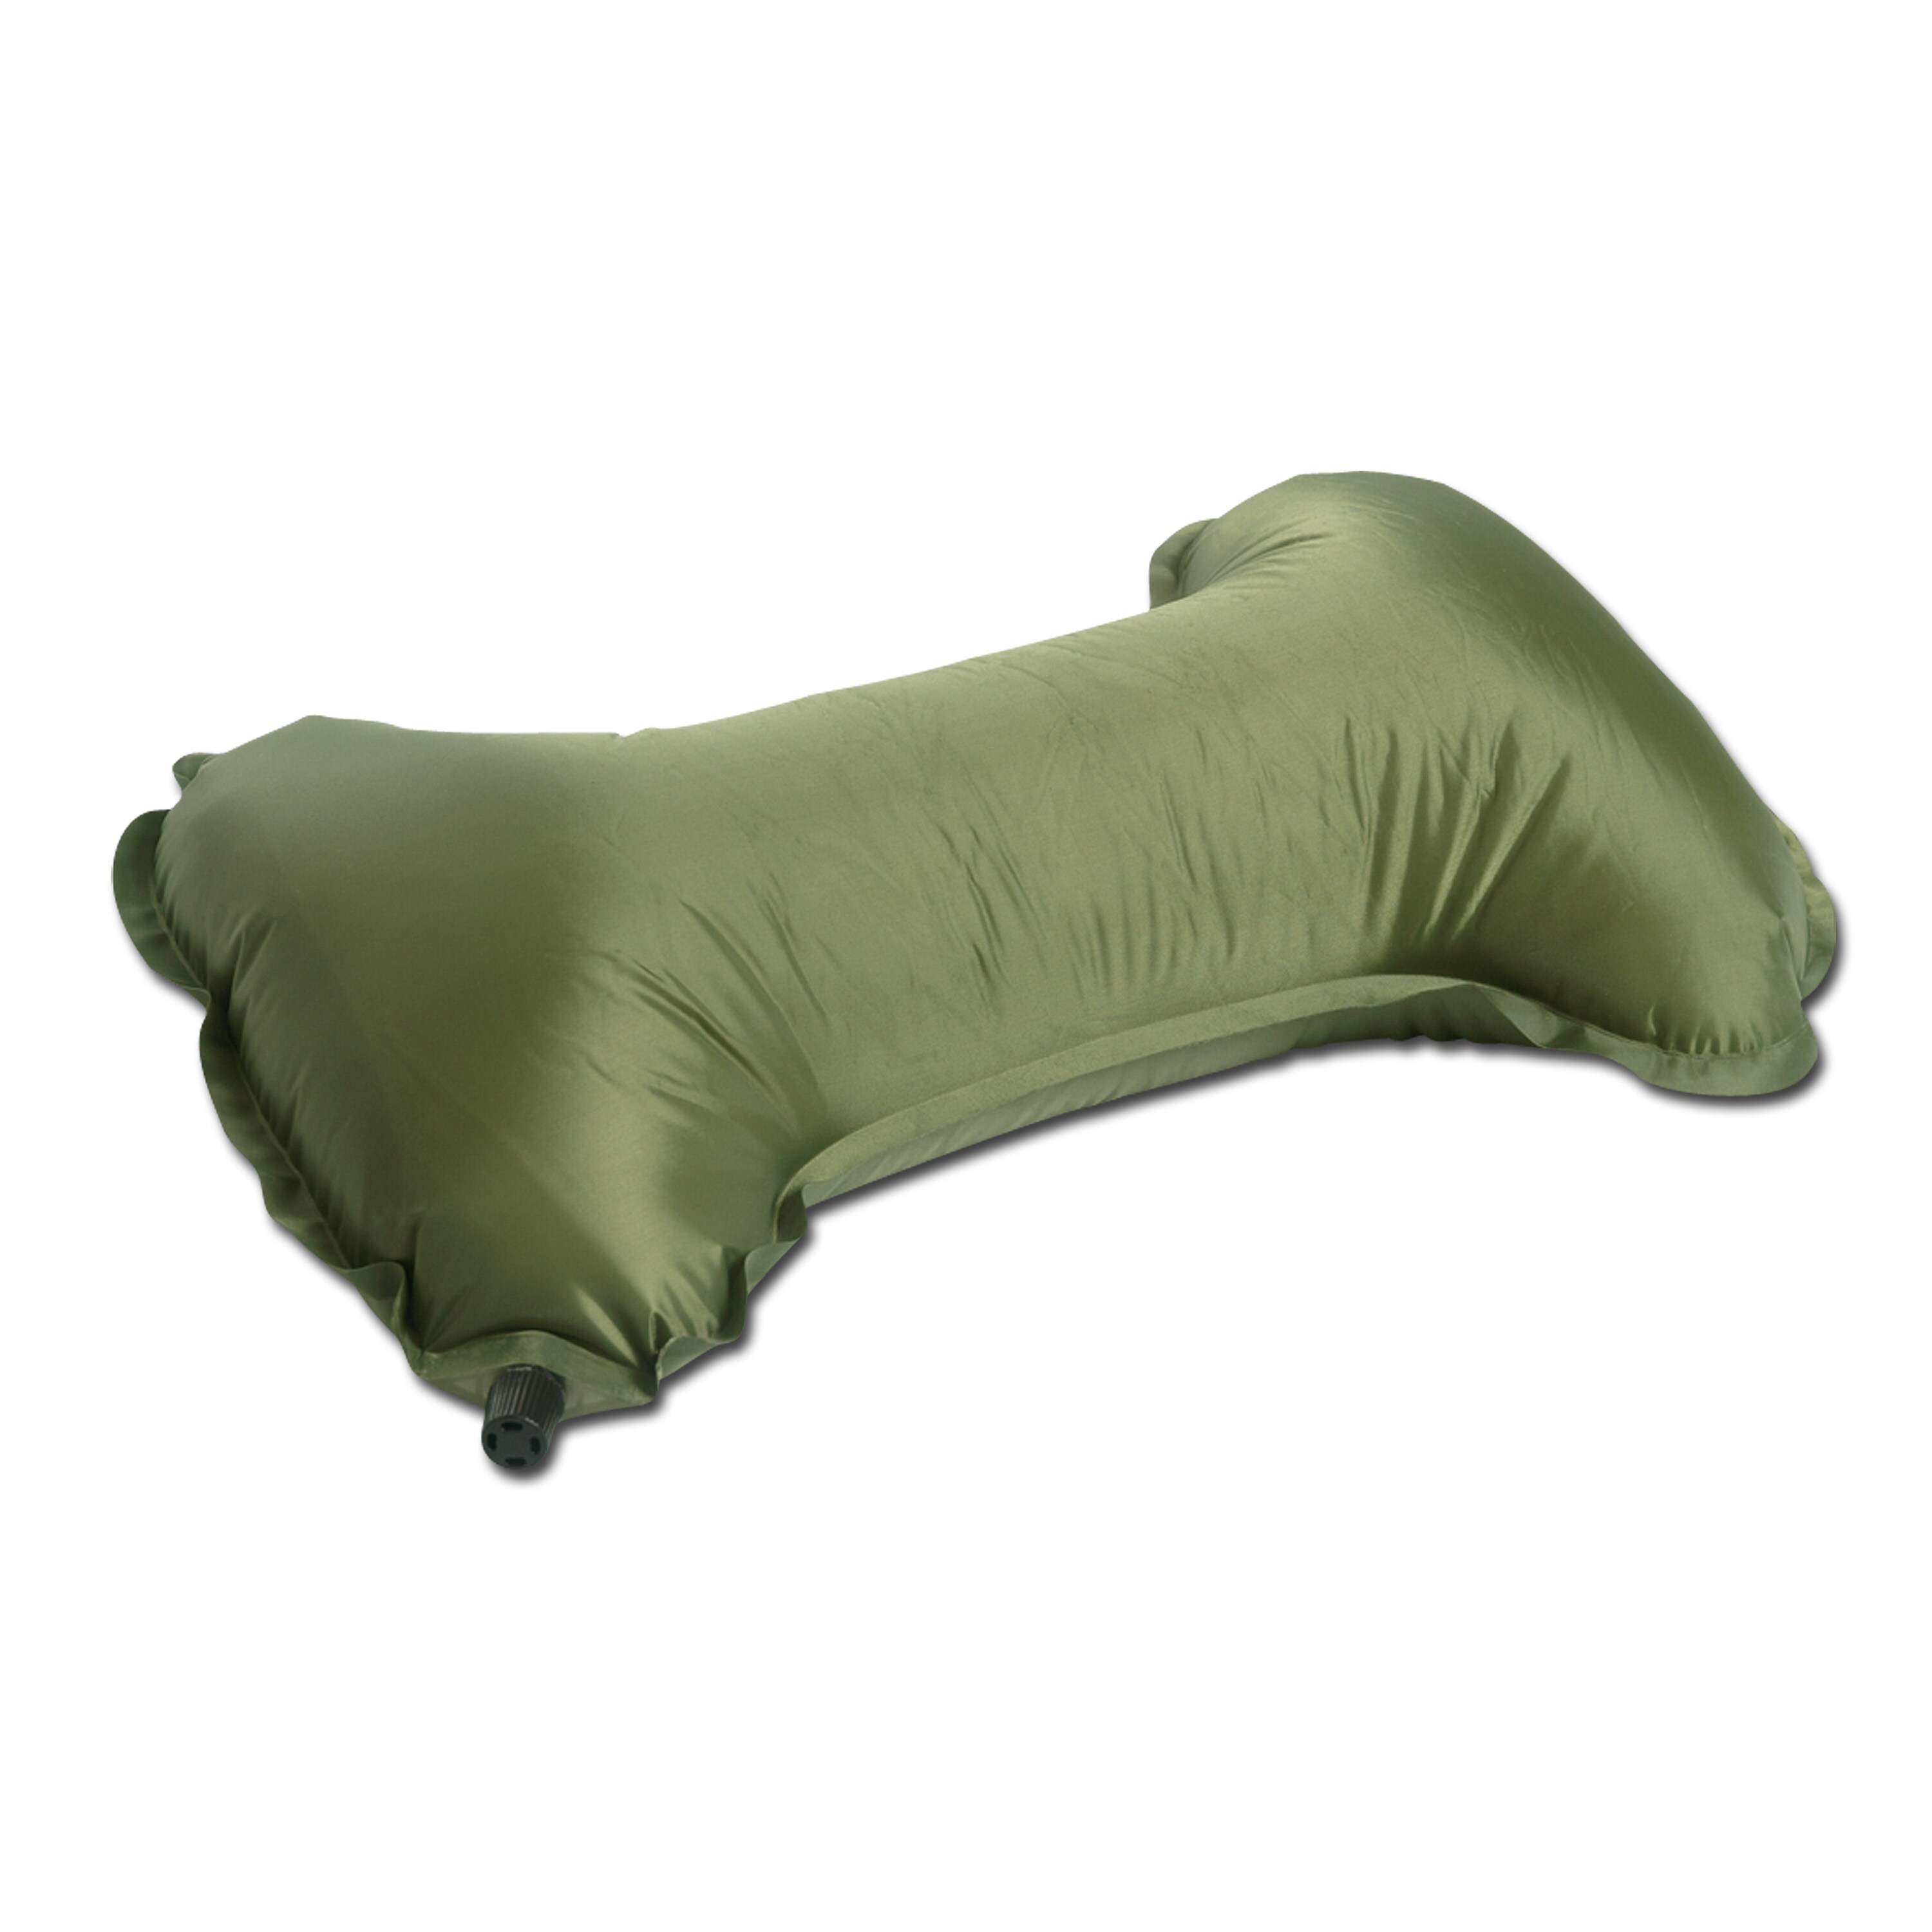 Almohada hinchable verde oliva con bolsa transporte Miltec saco dormir acampada 